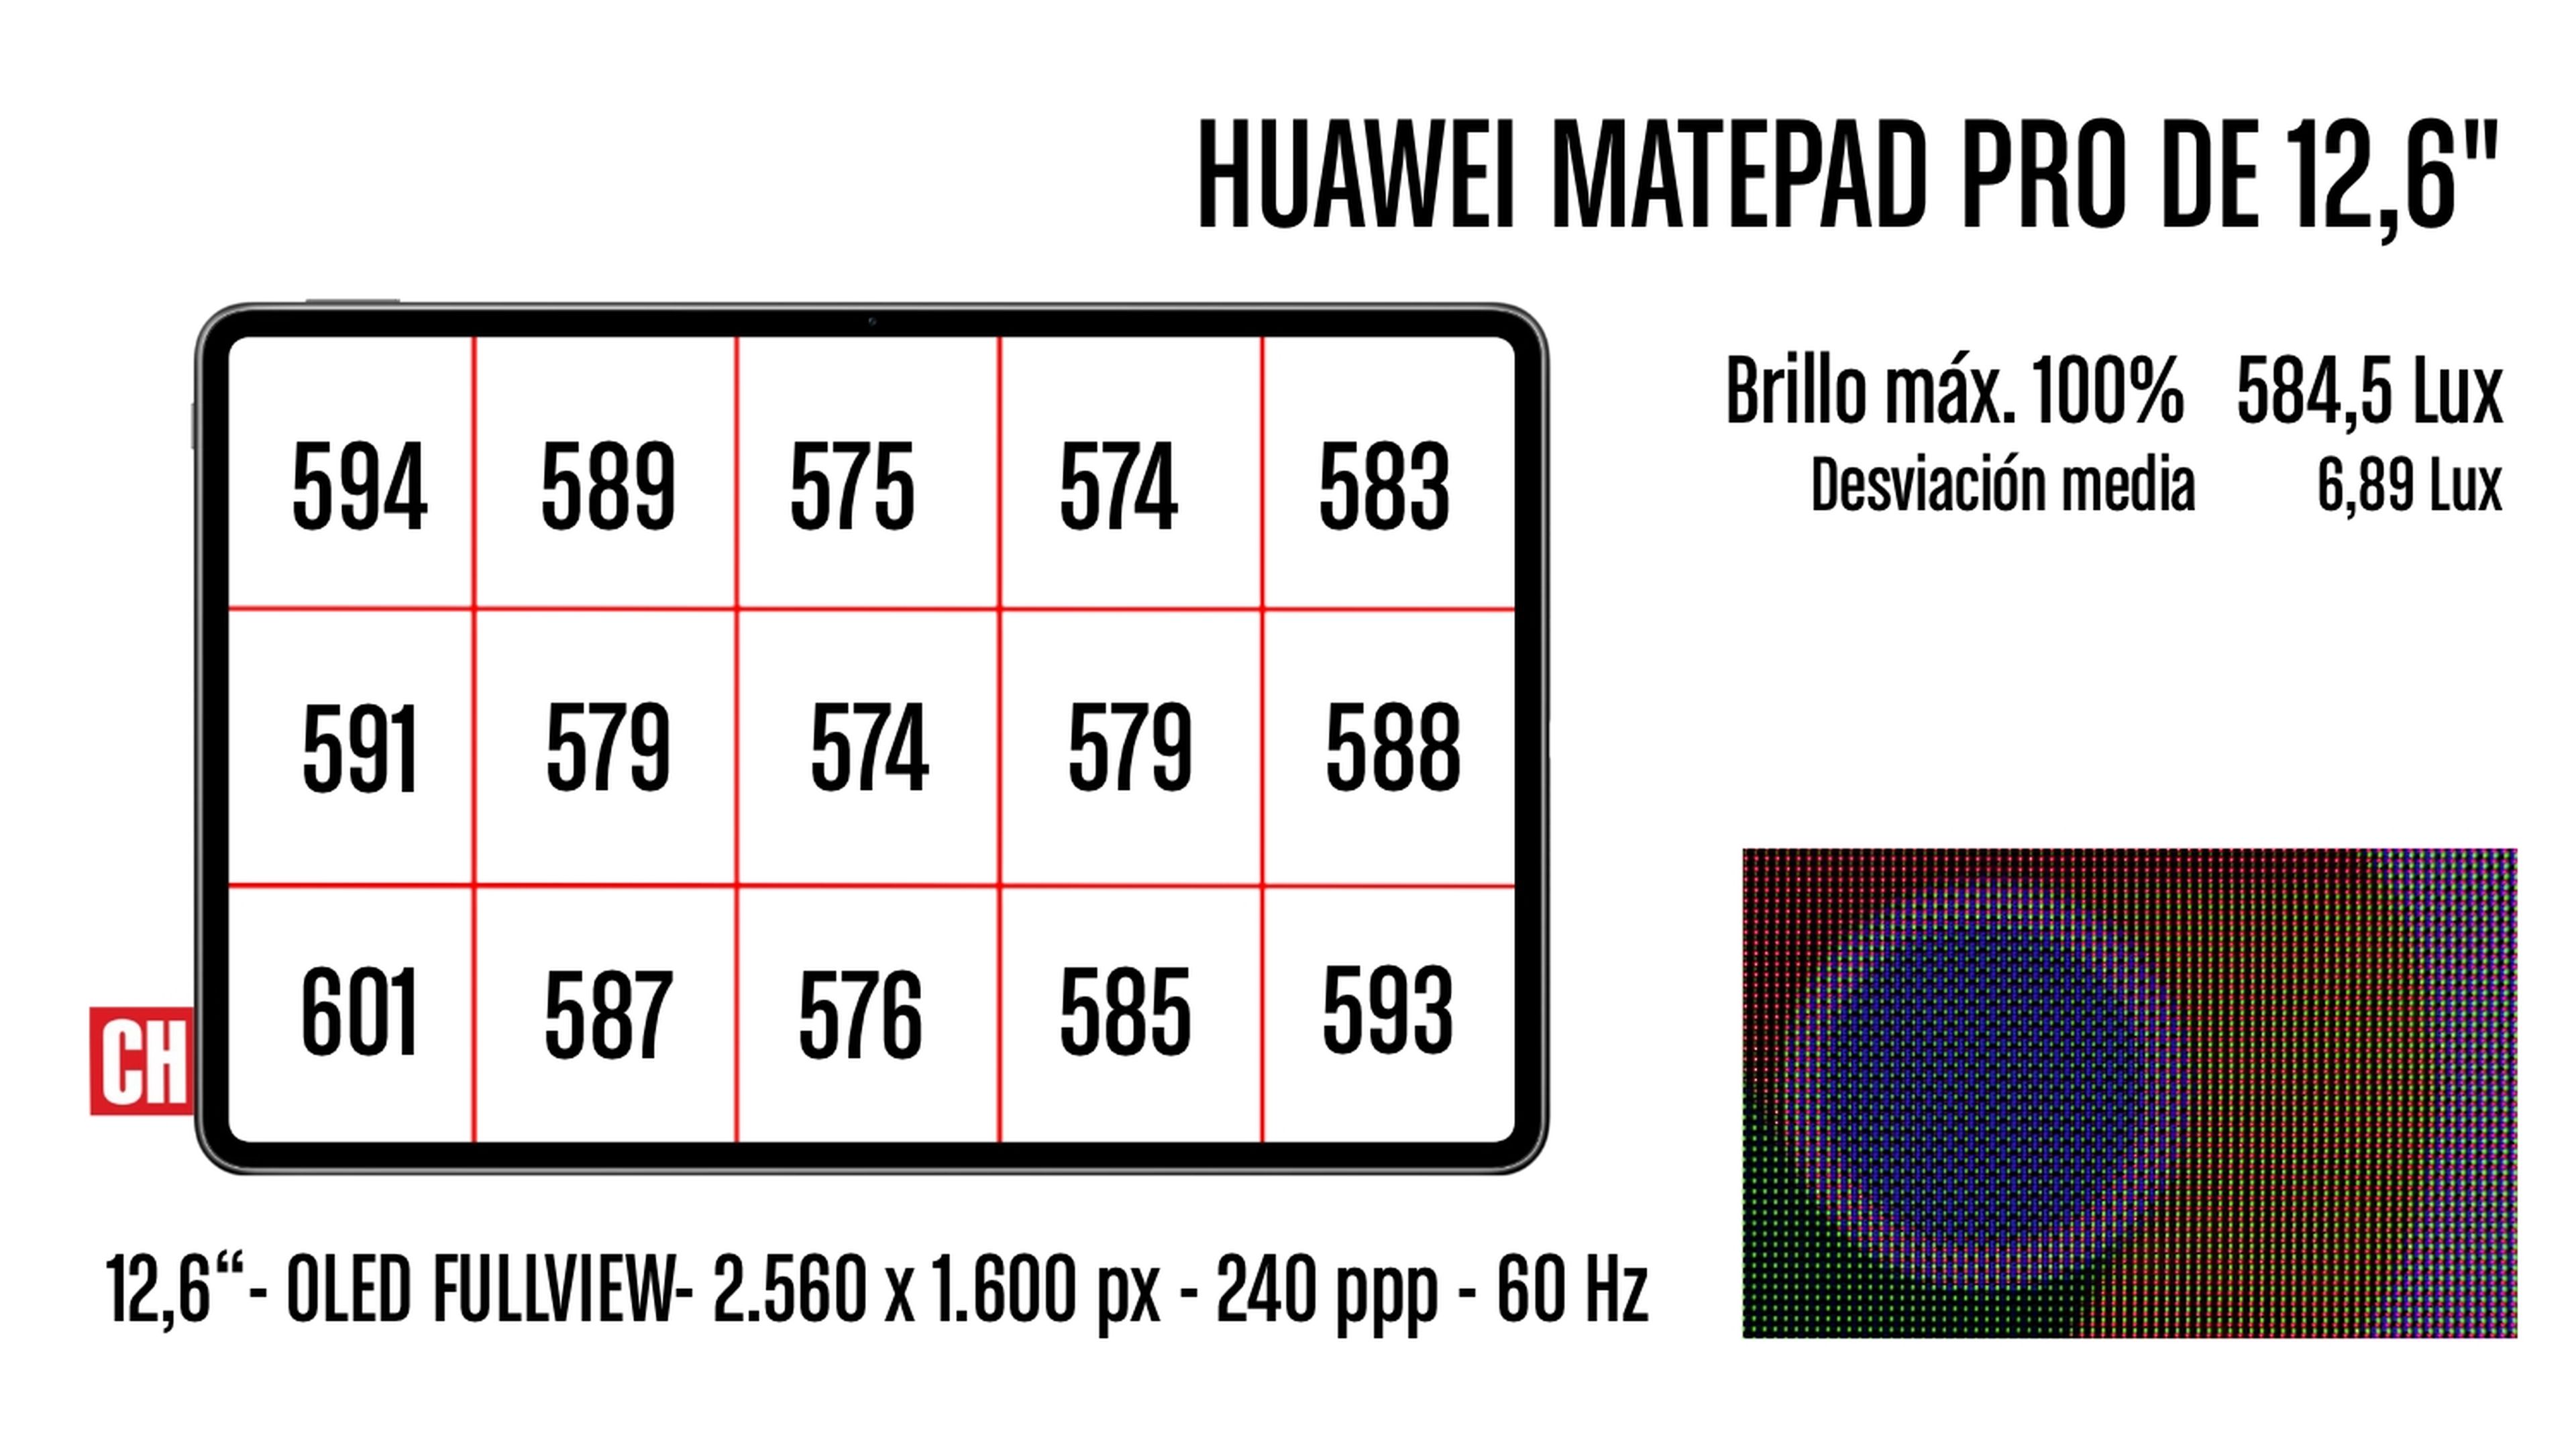 Huawei MatePad Pro de 12,6", análisis y opinión